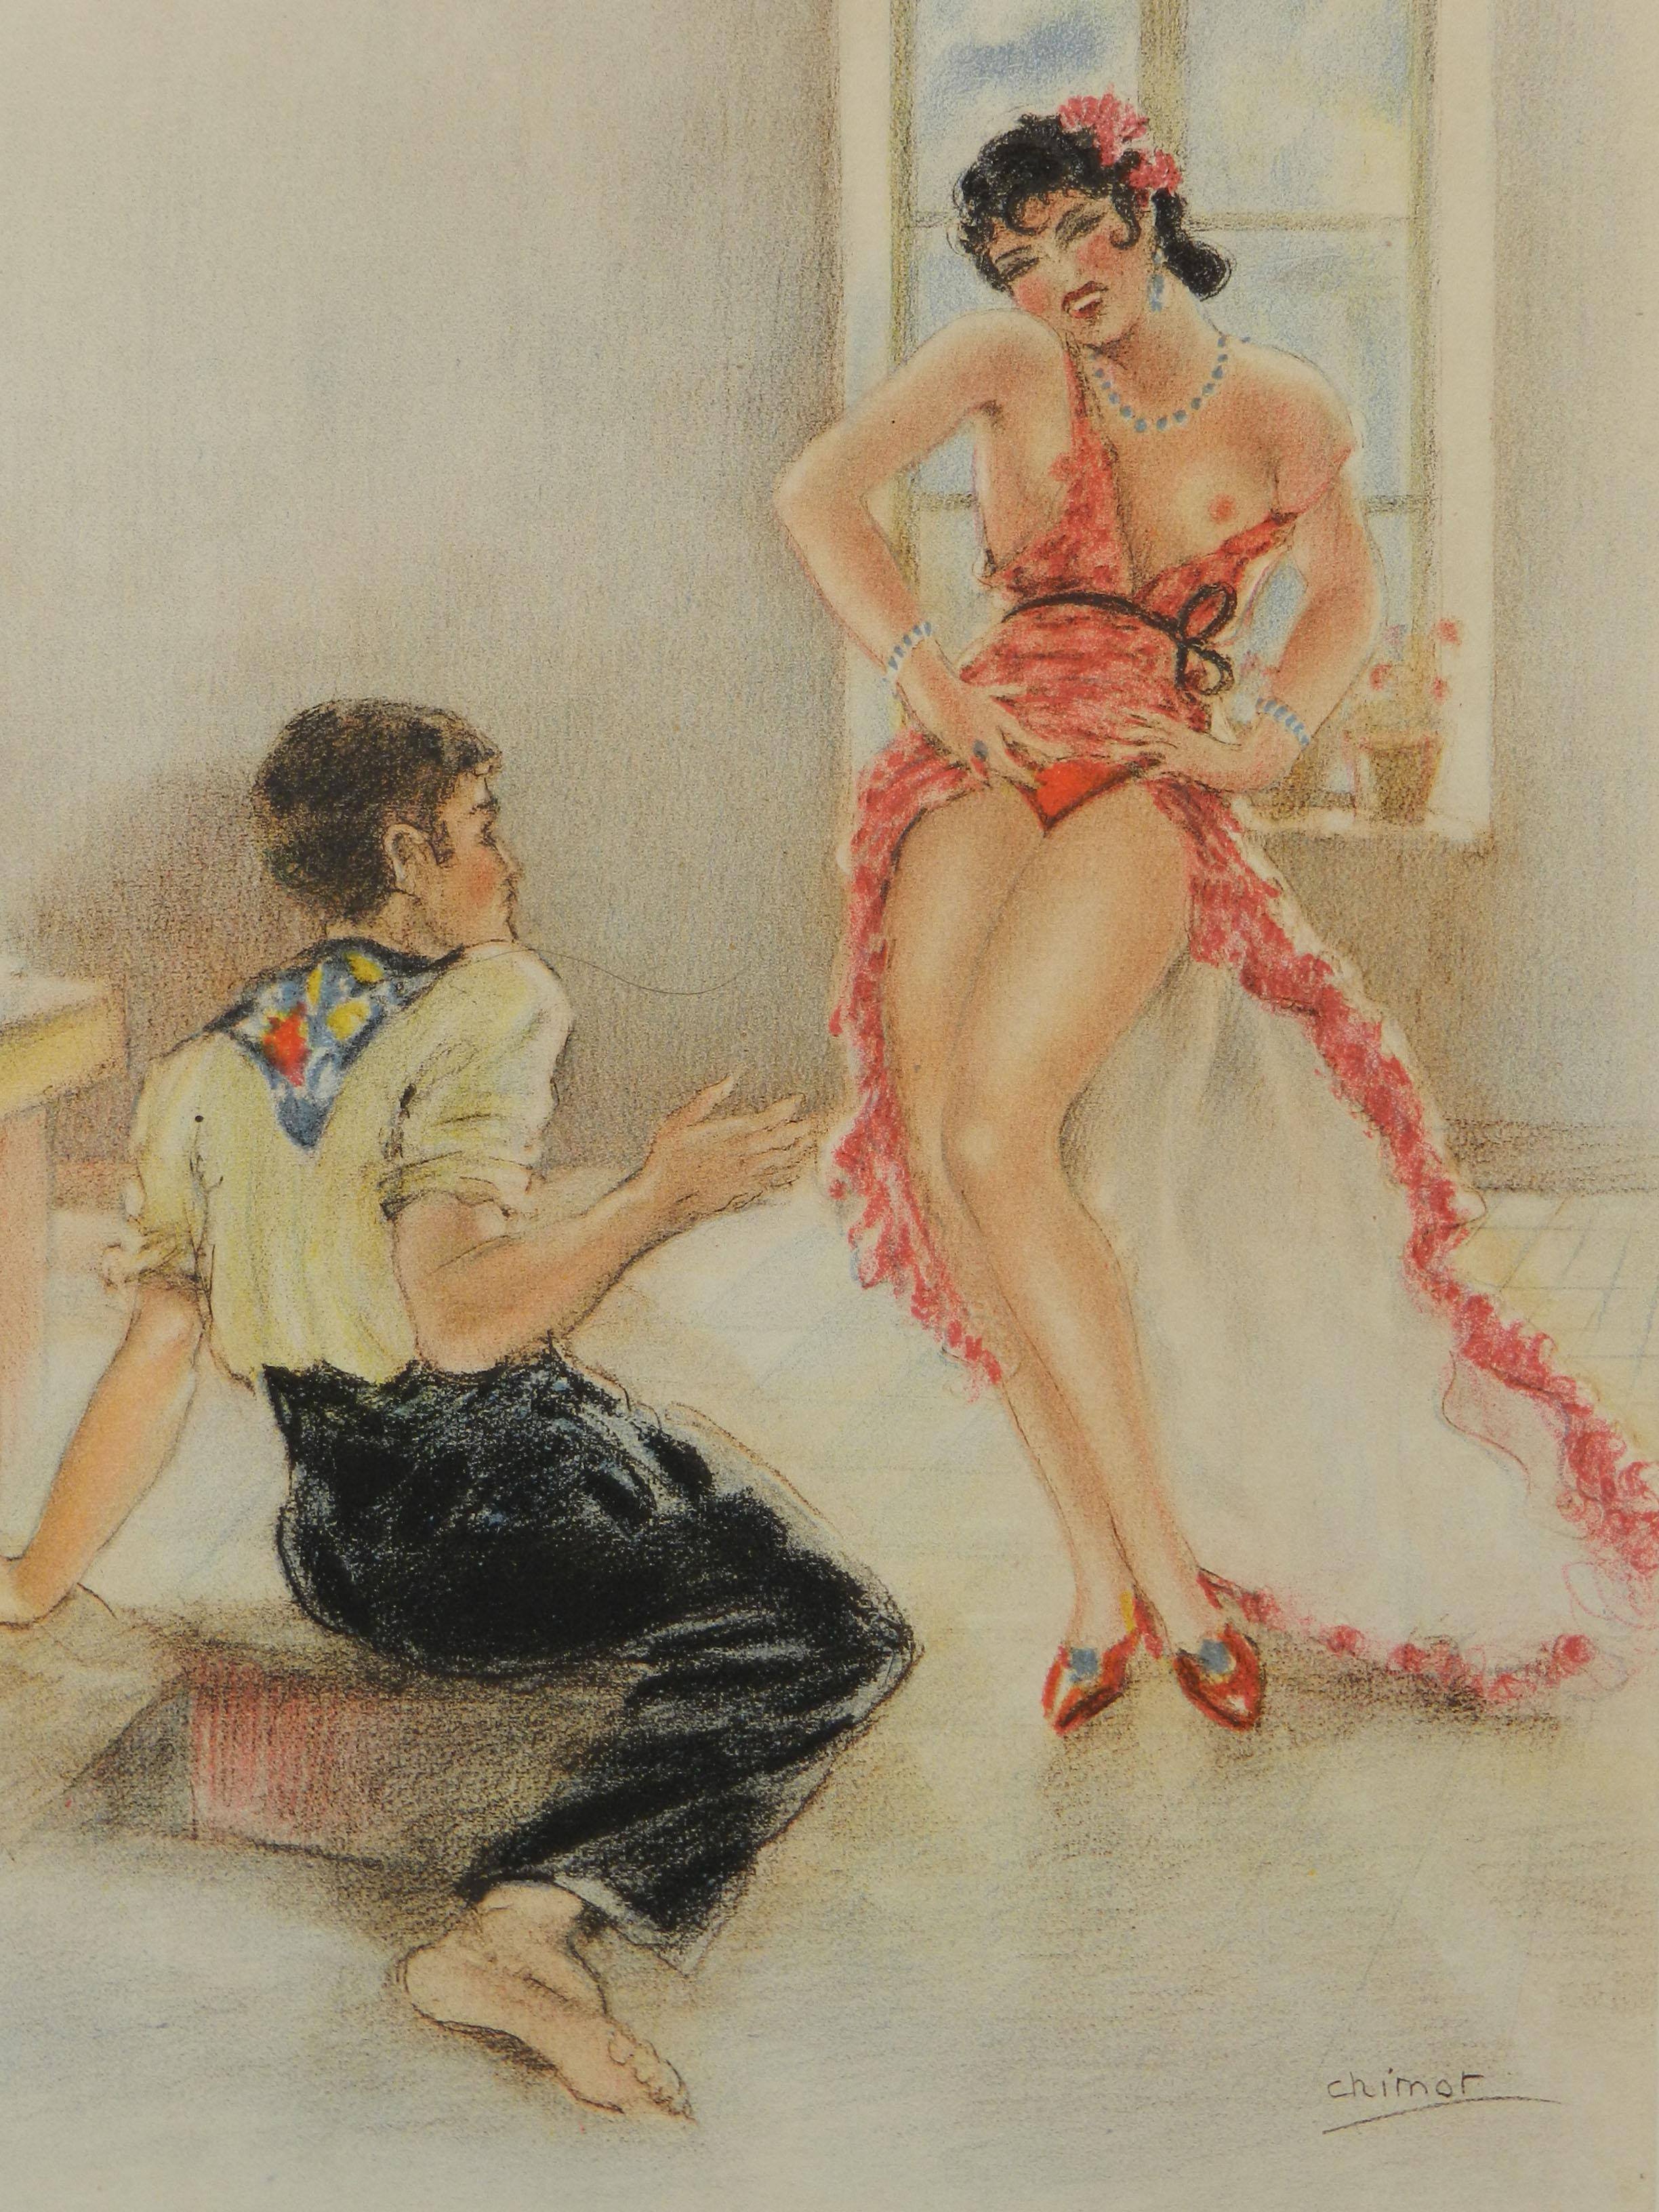 Spanisches Paar von Edward Chimot, nudefarbener Lithographie, um 1946 